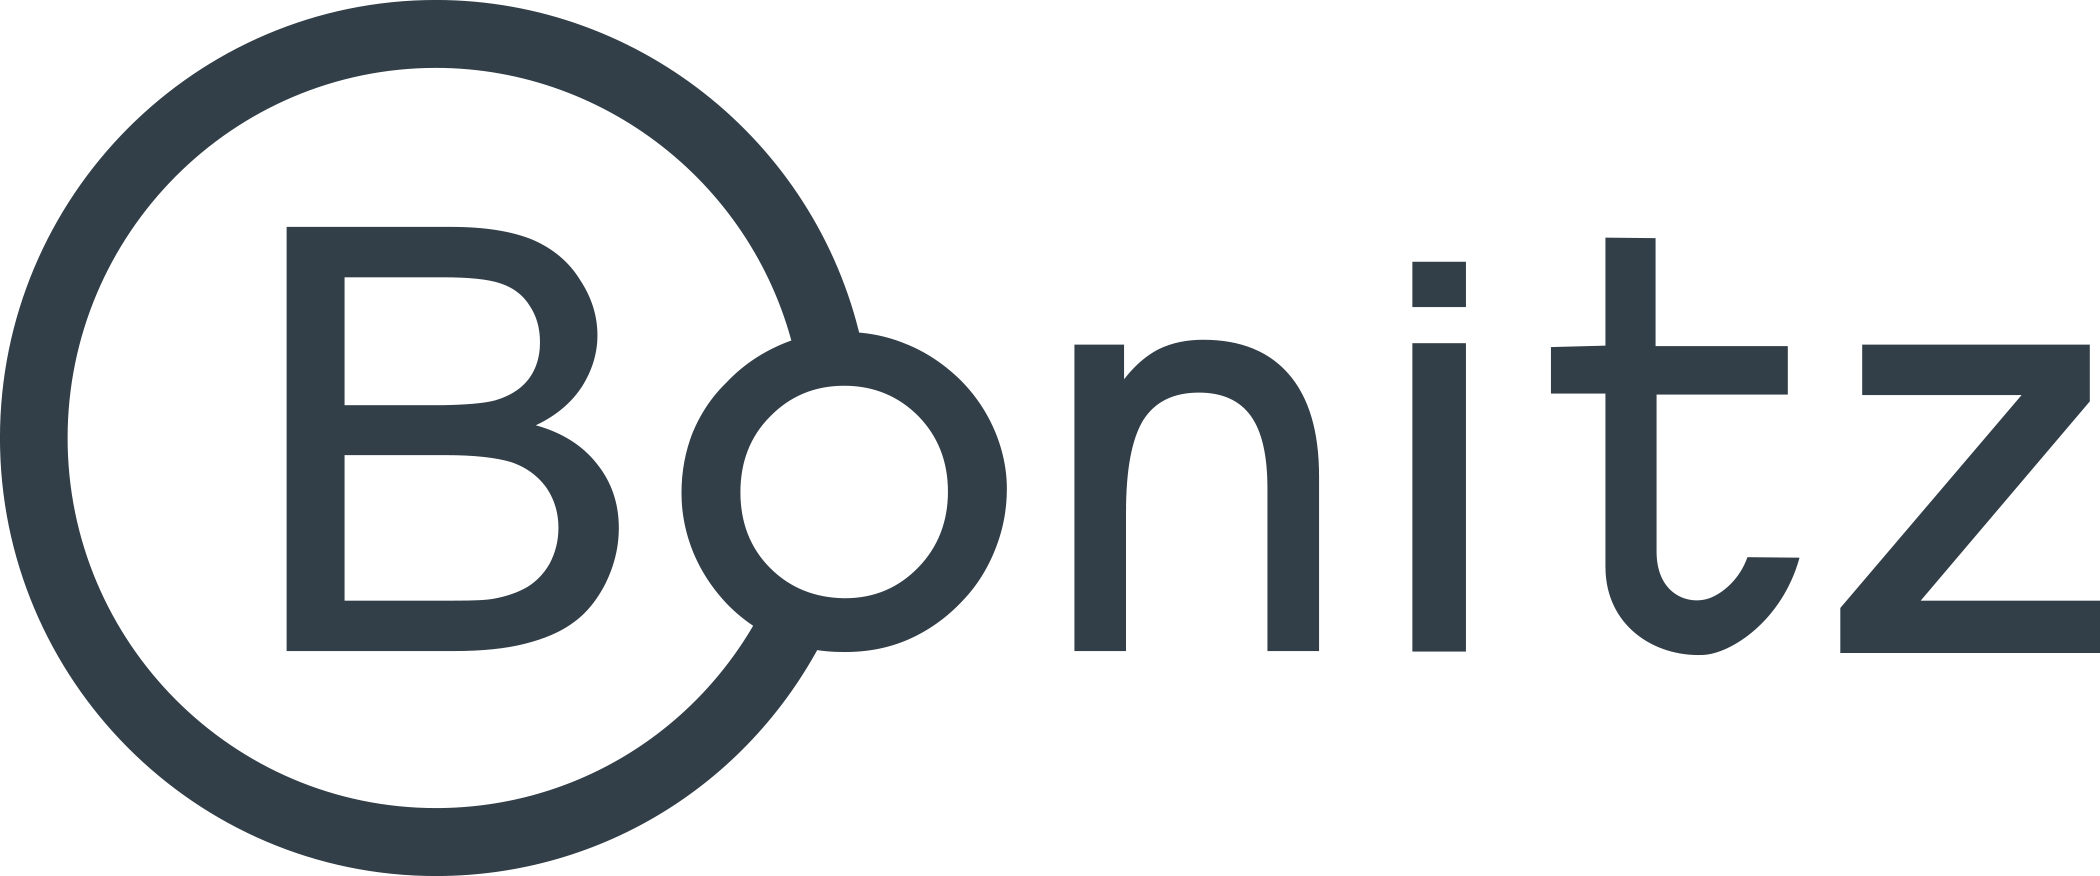 Bonitz, Inc. logo